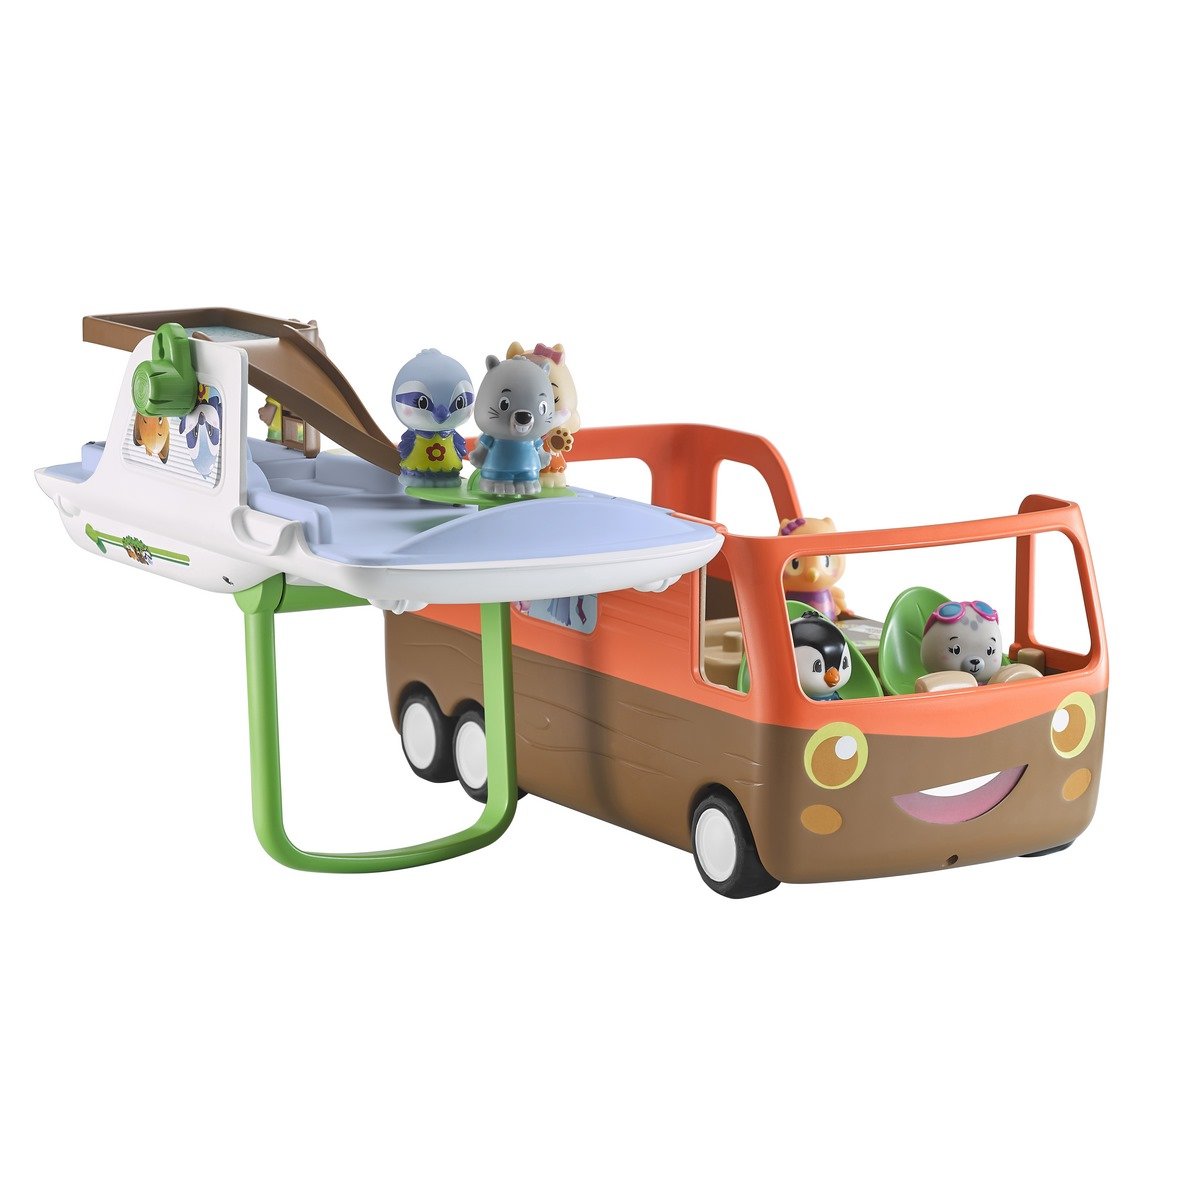 Klorofil Le camping-car, le jouet dont rêvent les enfants pour